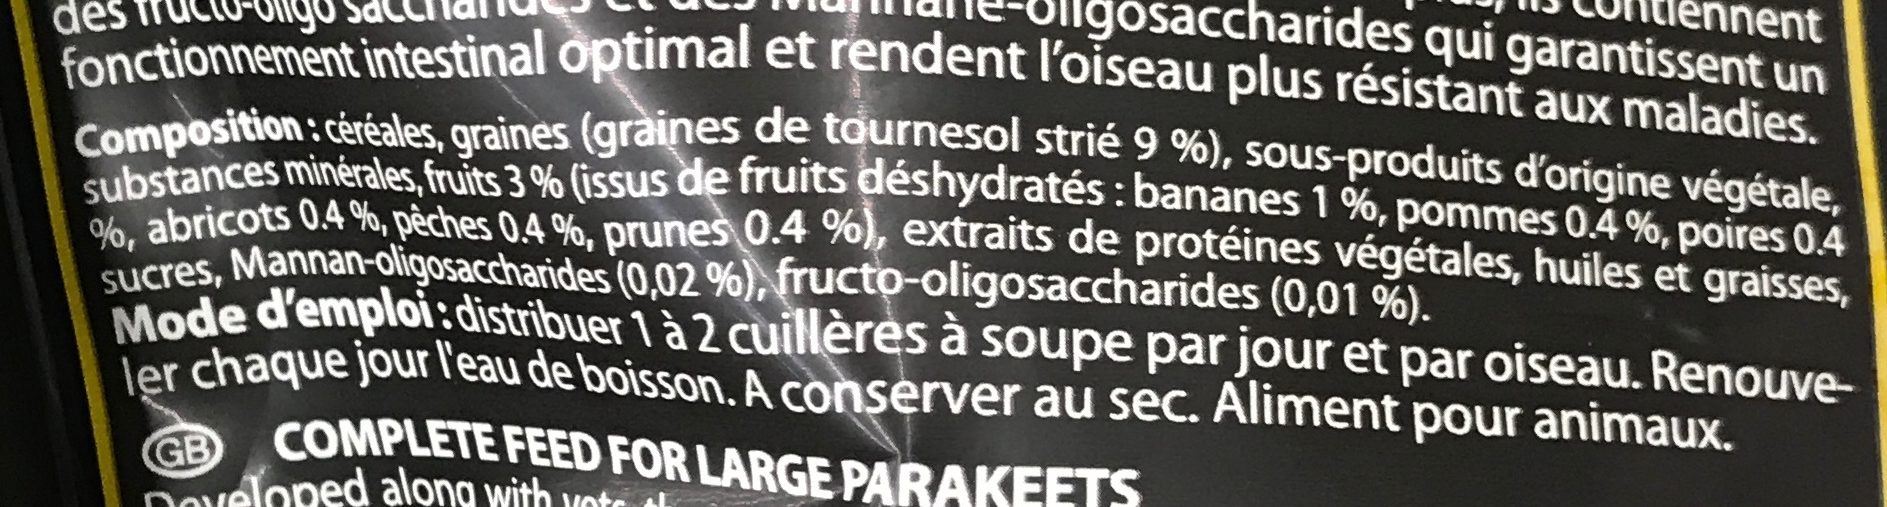 Menu Premium aux fruits Grandes Perruches - Ingrédients - fr